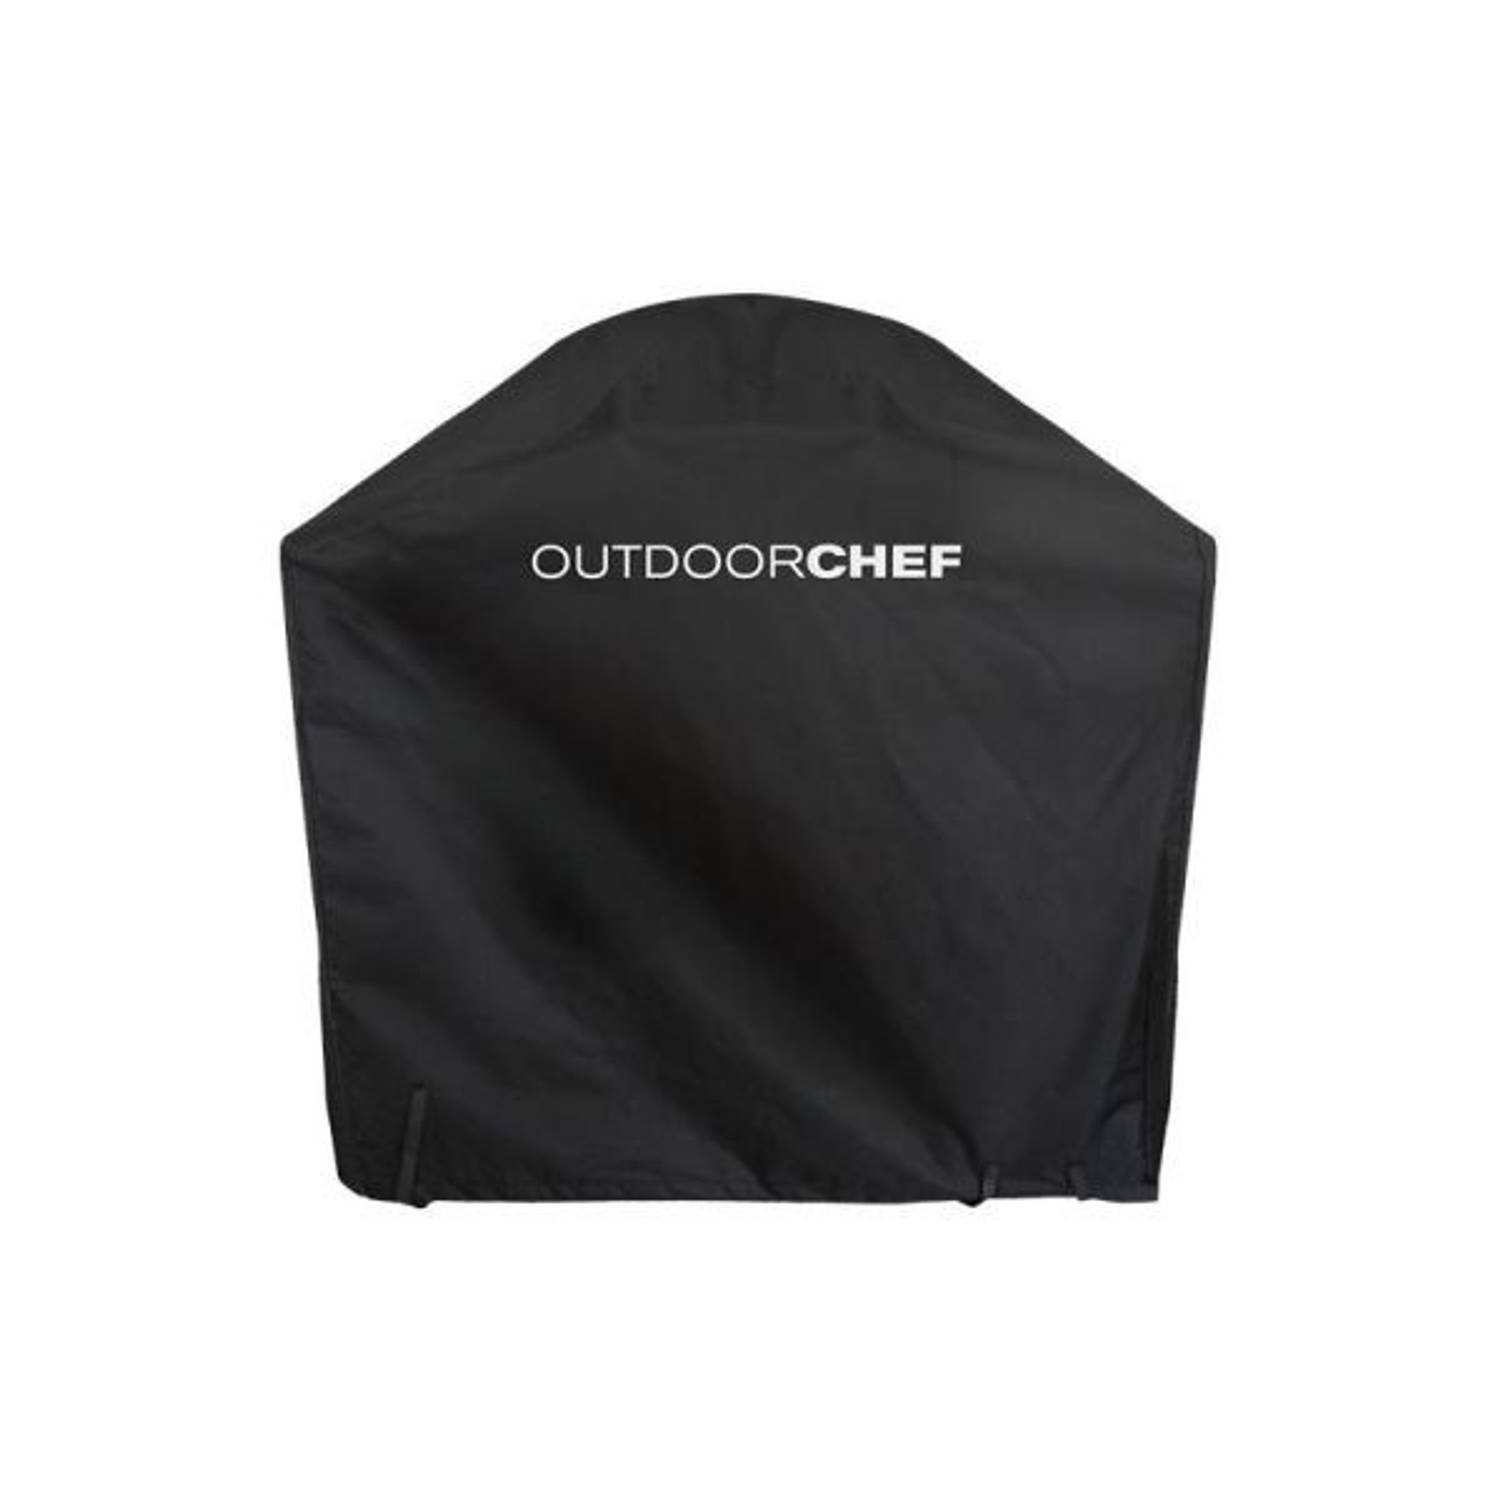 Outdoorchef Beschermhoes Voor Gasbarbecue Arosa 570 G Outdoorchef